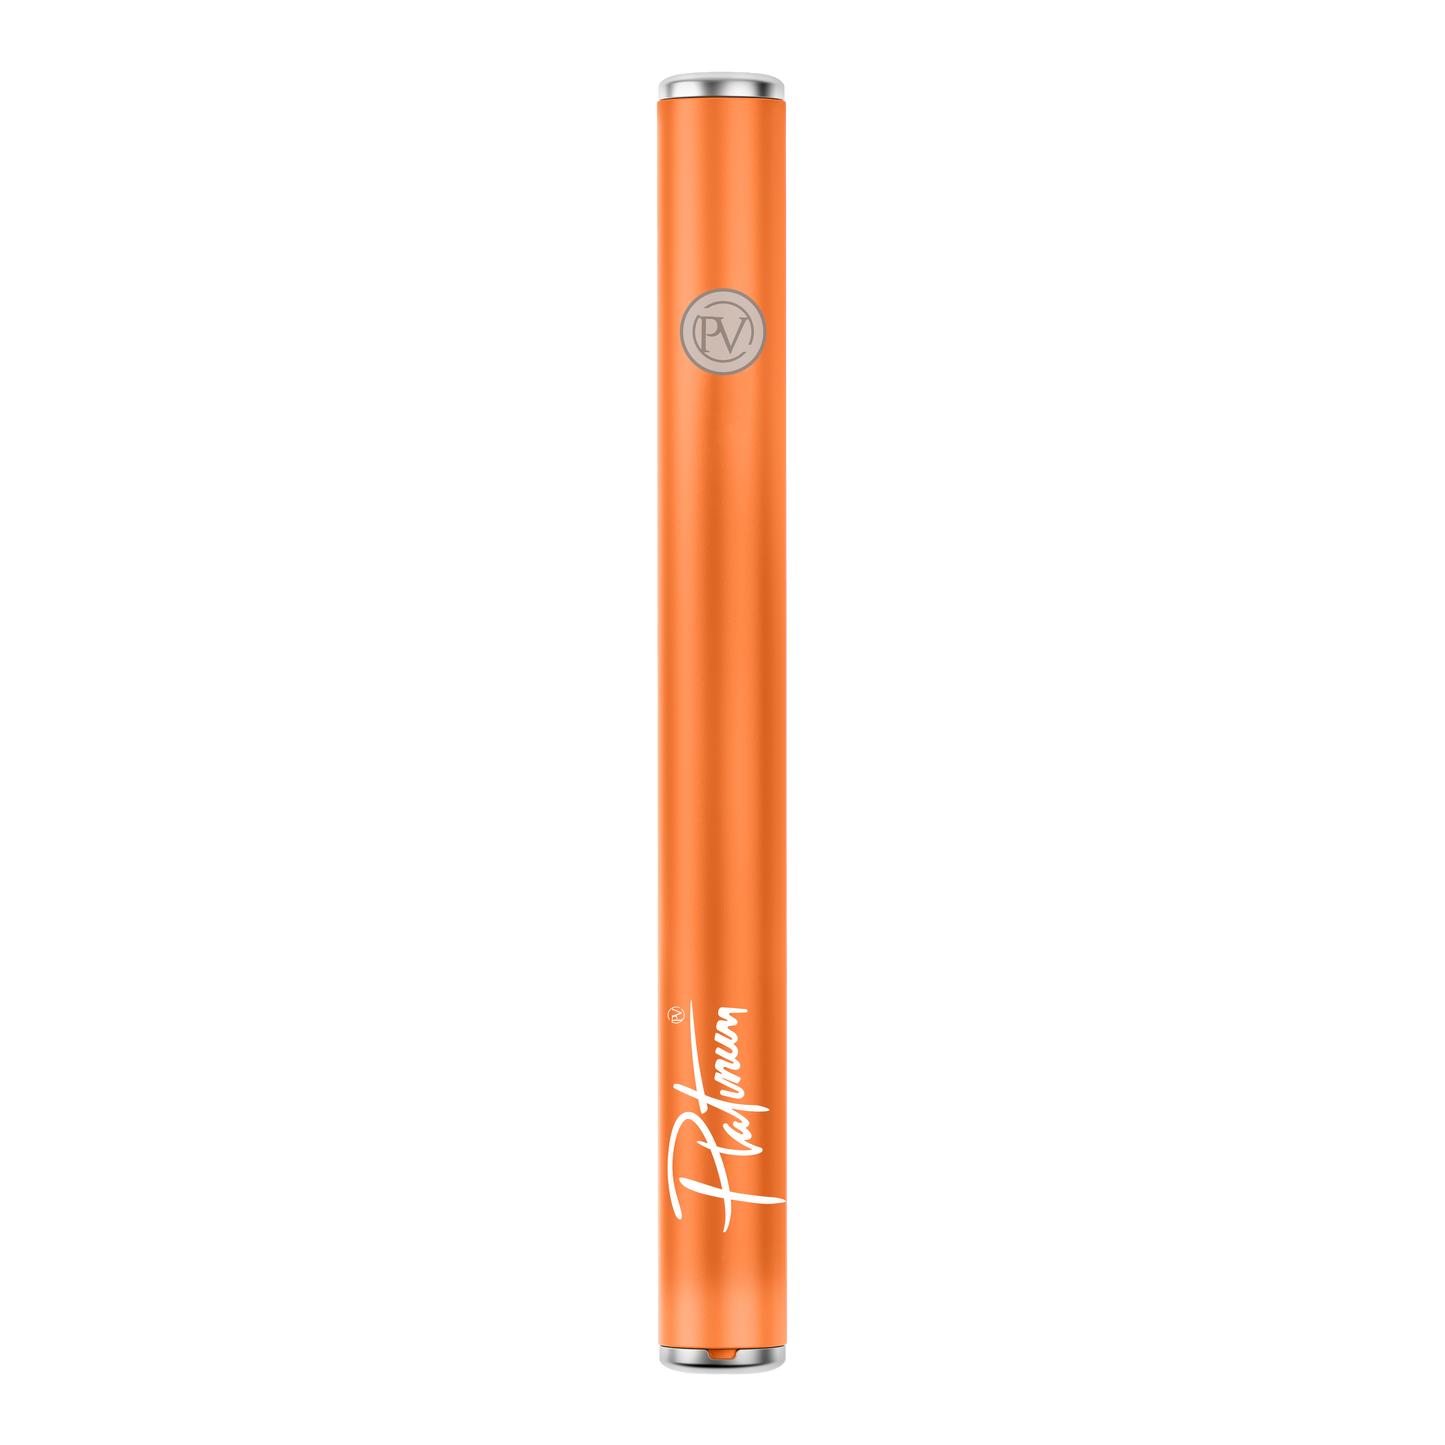 Premium Orange 510 Thread Battery